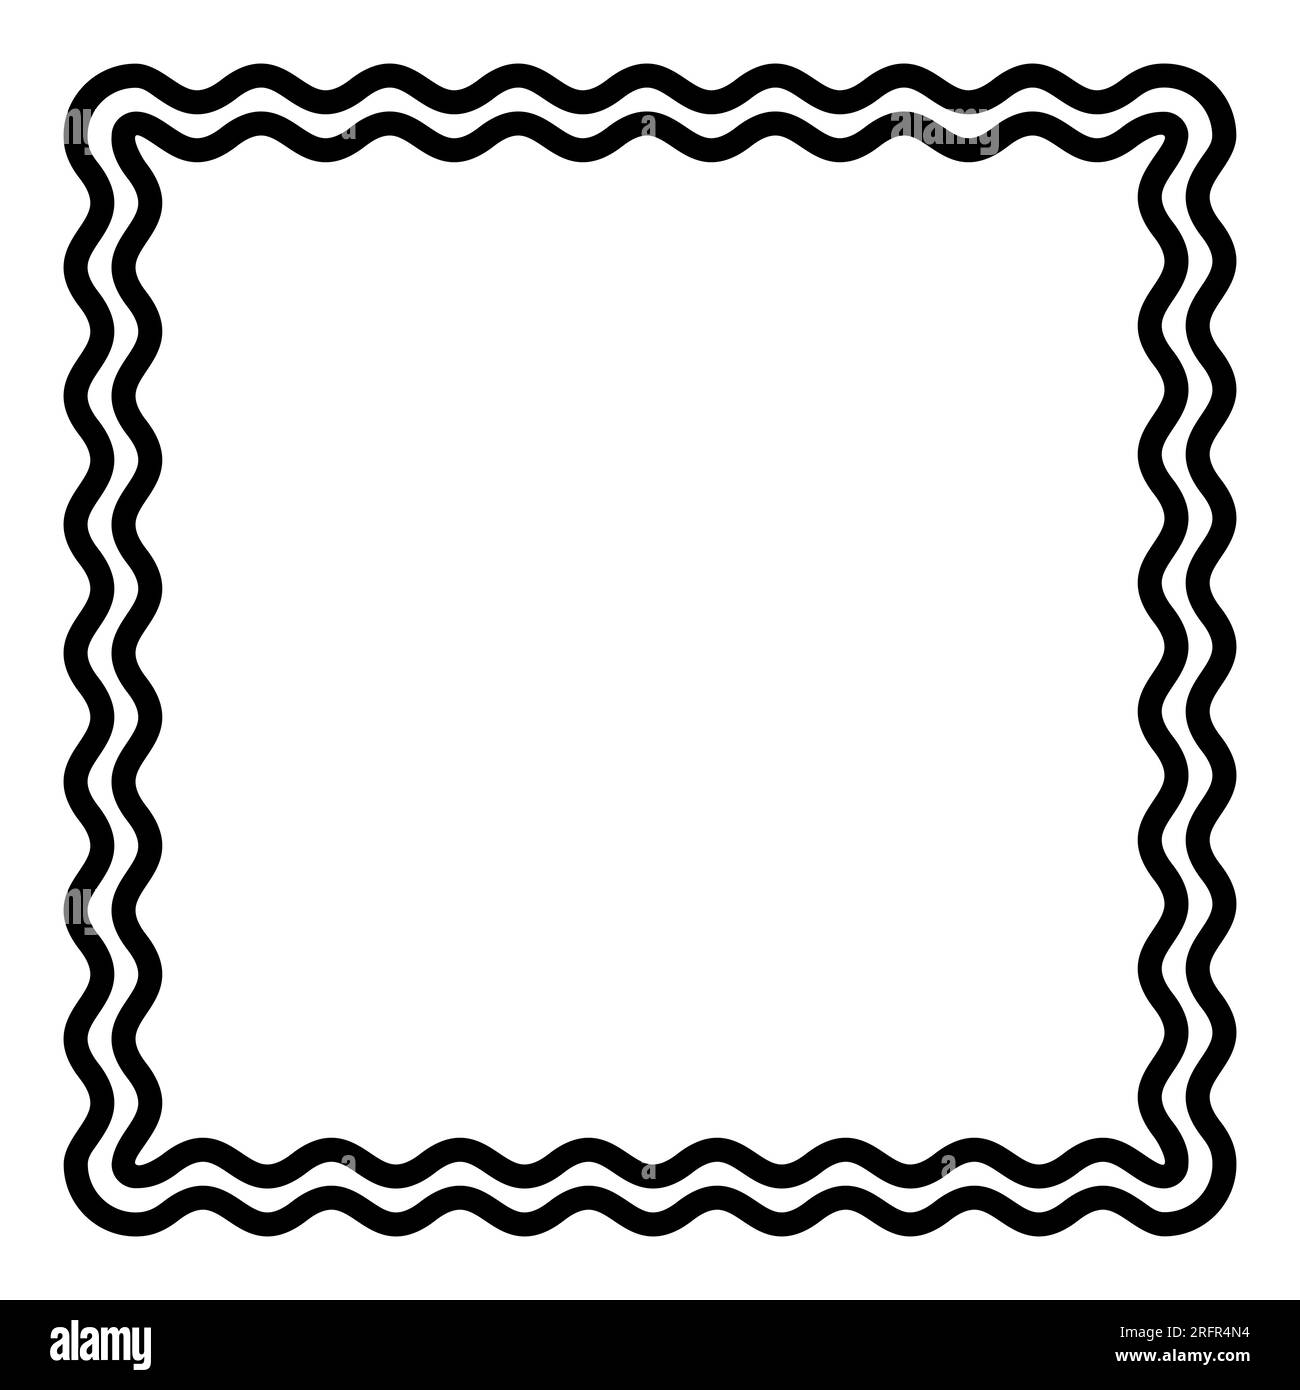 Deux lignes ondulées en gras formant un cadre carré. Bordure décorative et en forme de serpent, faite par deux lignes serpentines. Illustration isolée en noir et blanc. Banque D'Images